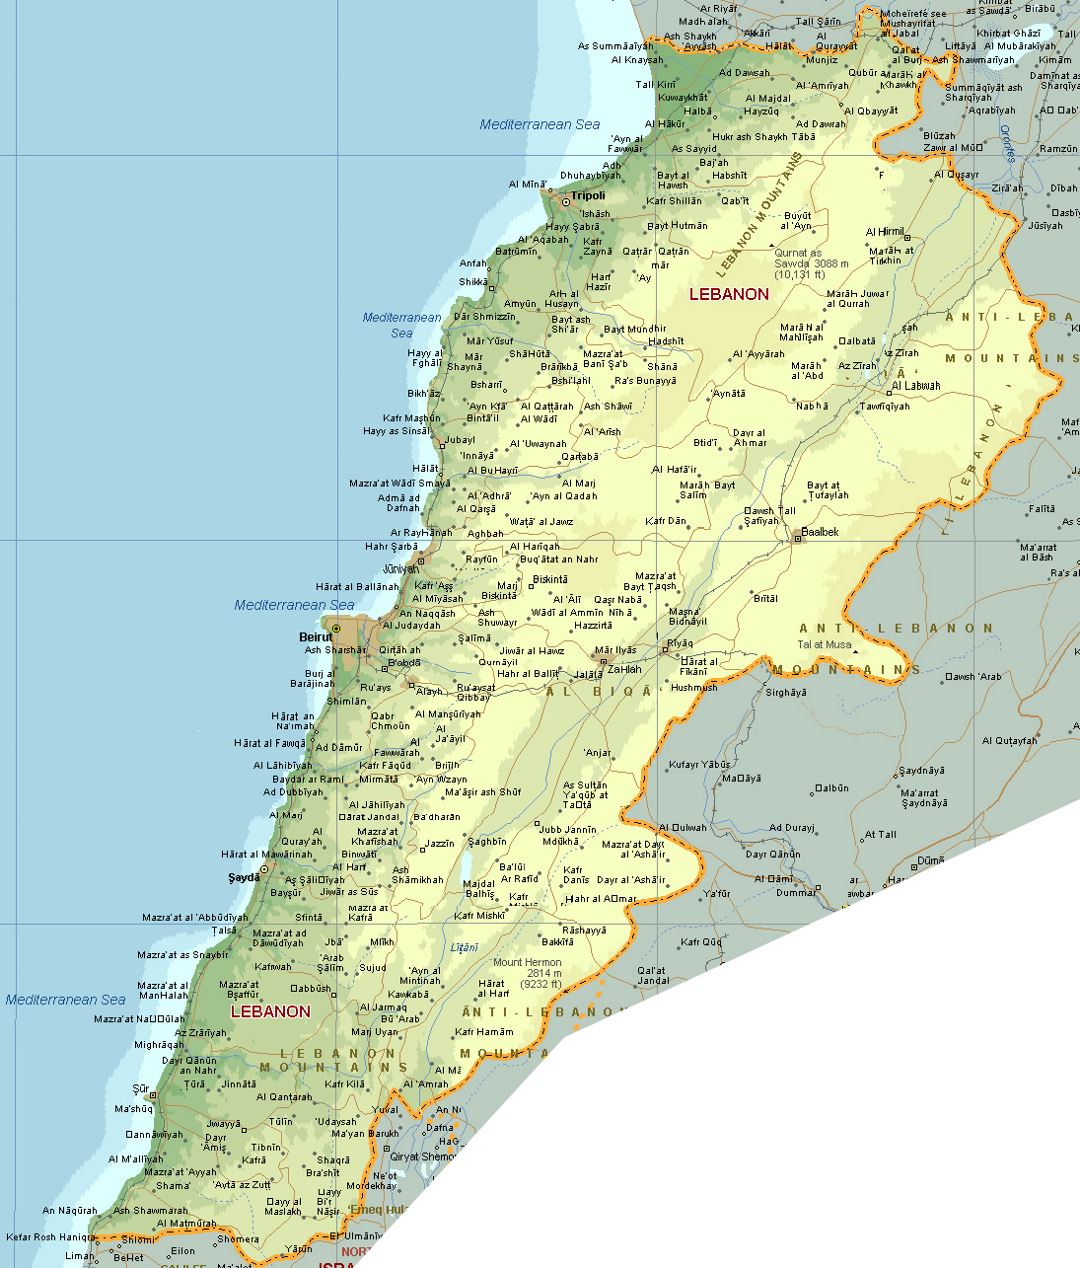 Детальная карта высот Ливана с дорогами, железными дорогами и всеми городами